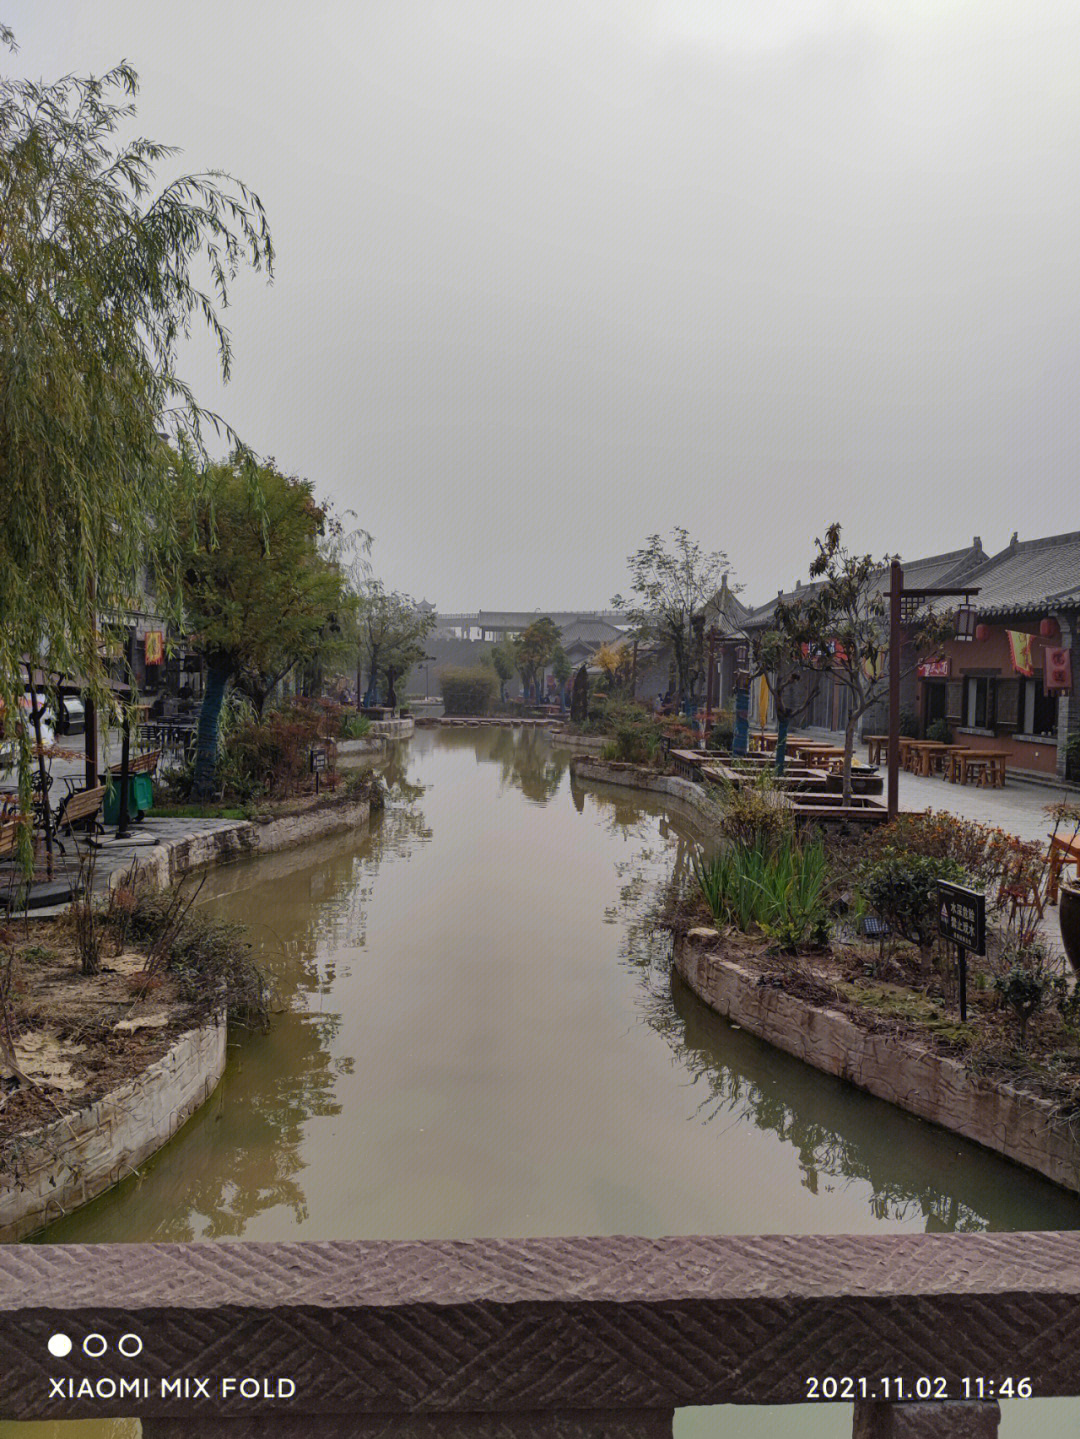 龙凤山古镇是几级景区图片